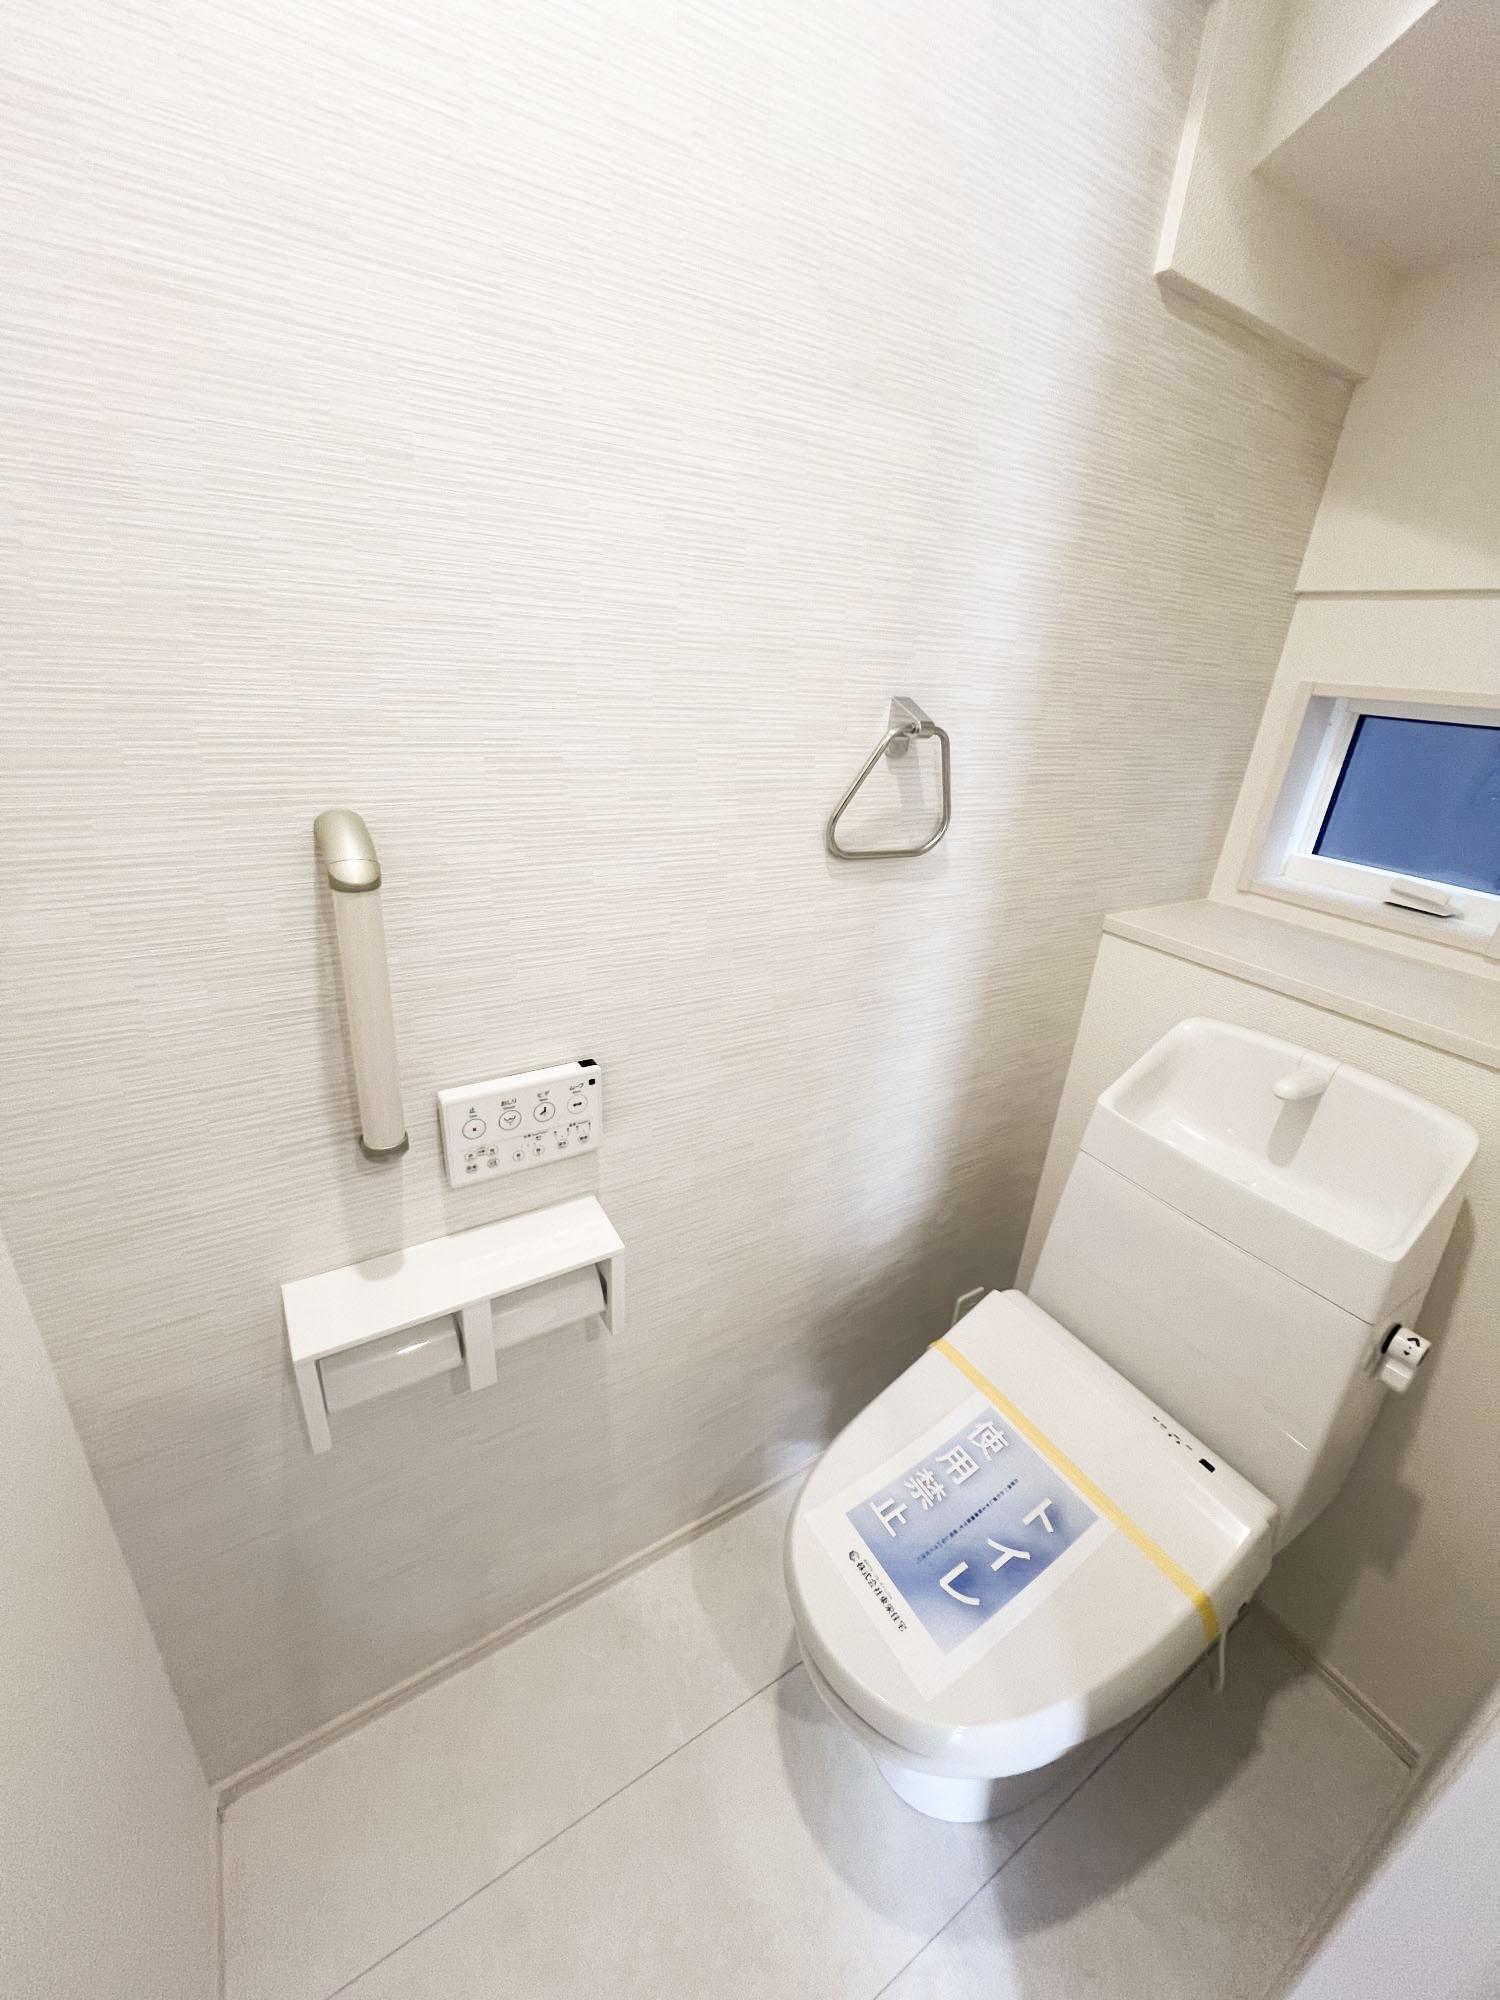 【1号棟1階トイレ】水はねしにくい手洗い器、手すり、カウンタなど設備も充実しています。